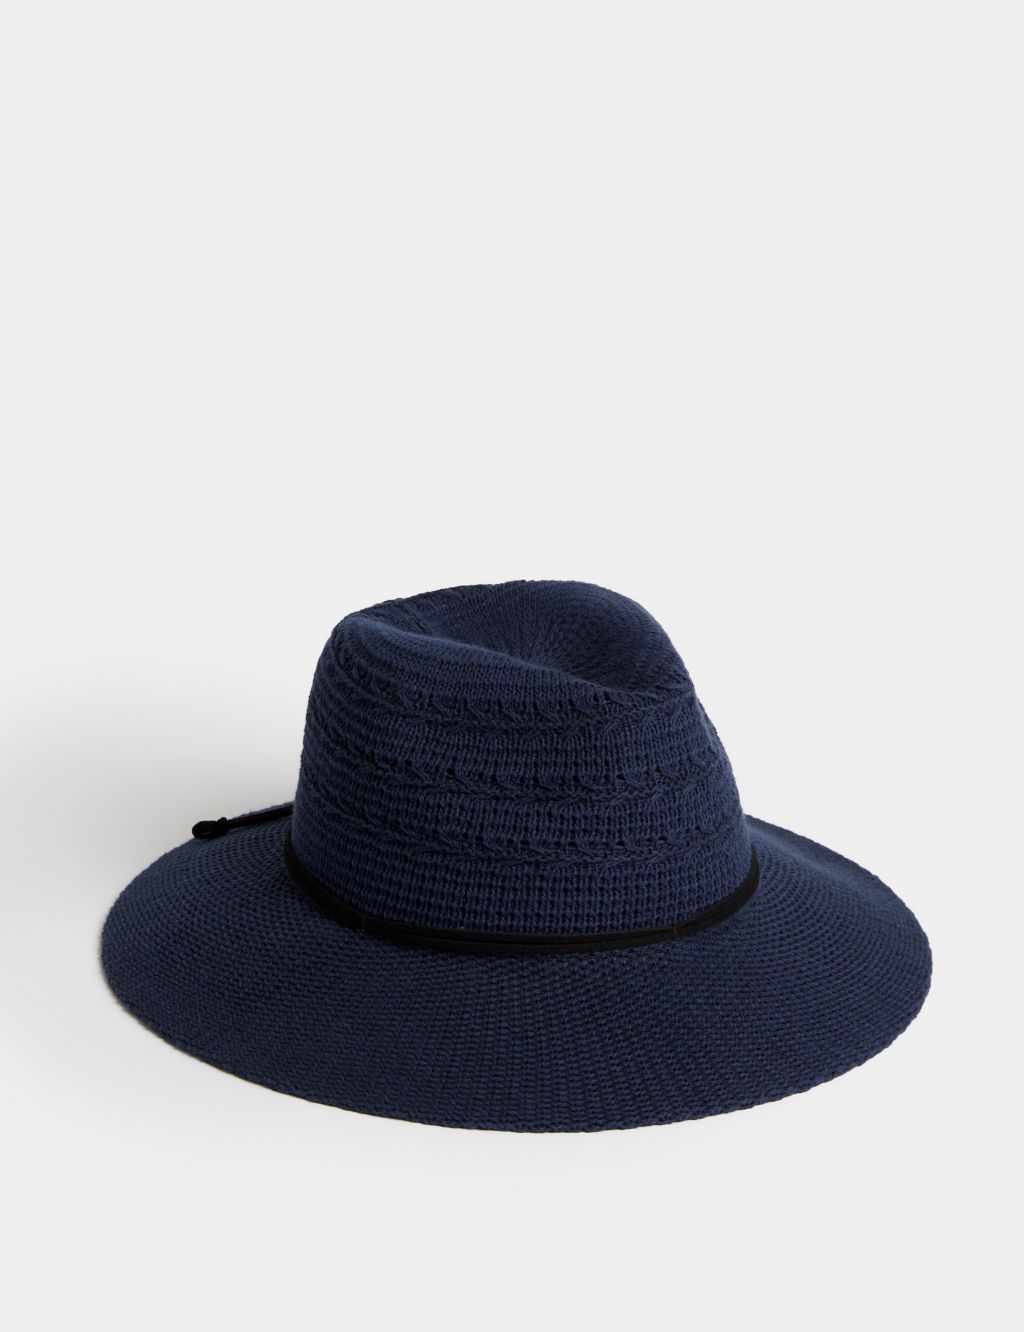 Cotton Rich Packable Fedora Hat image 1